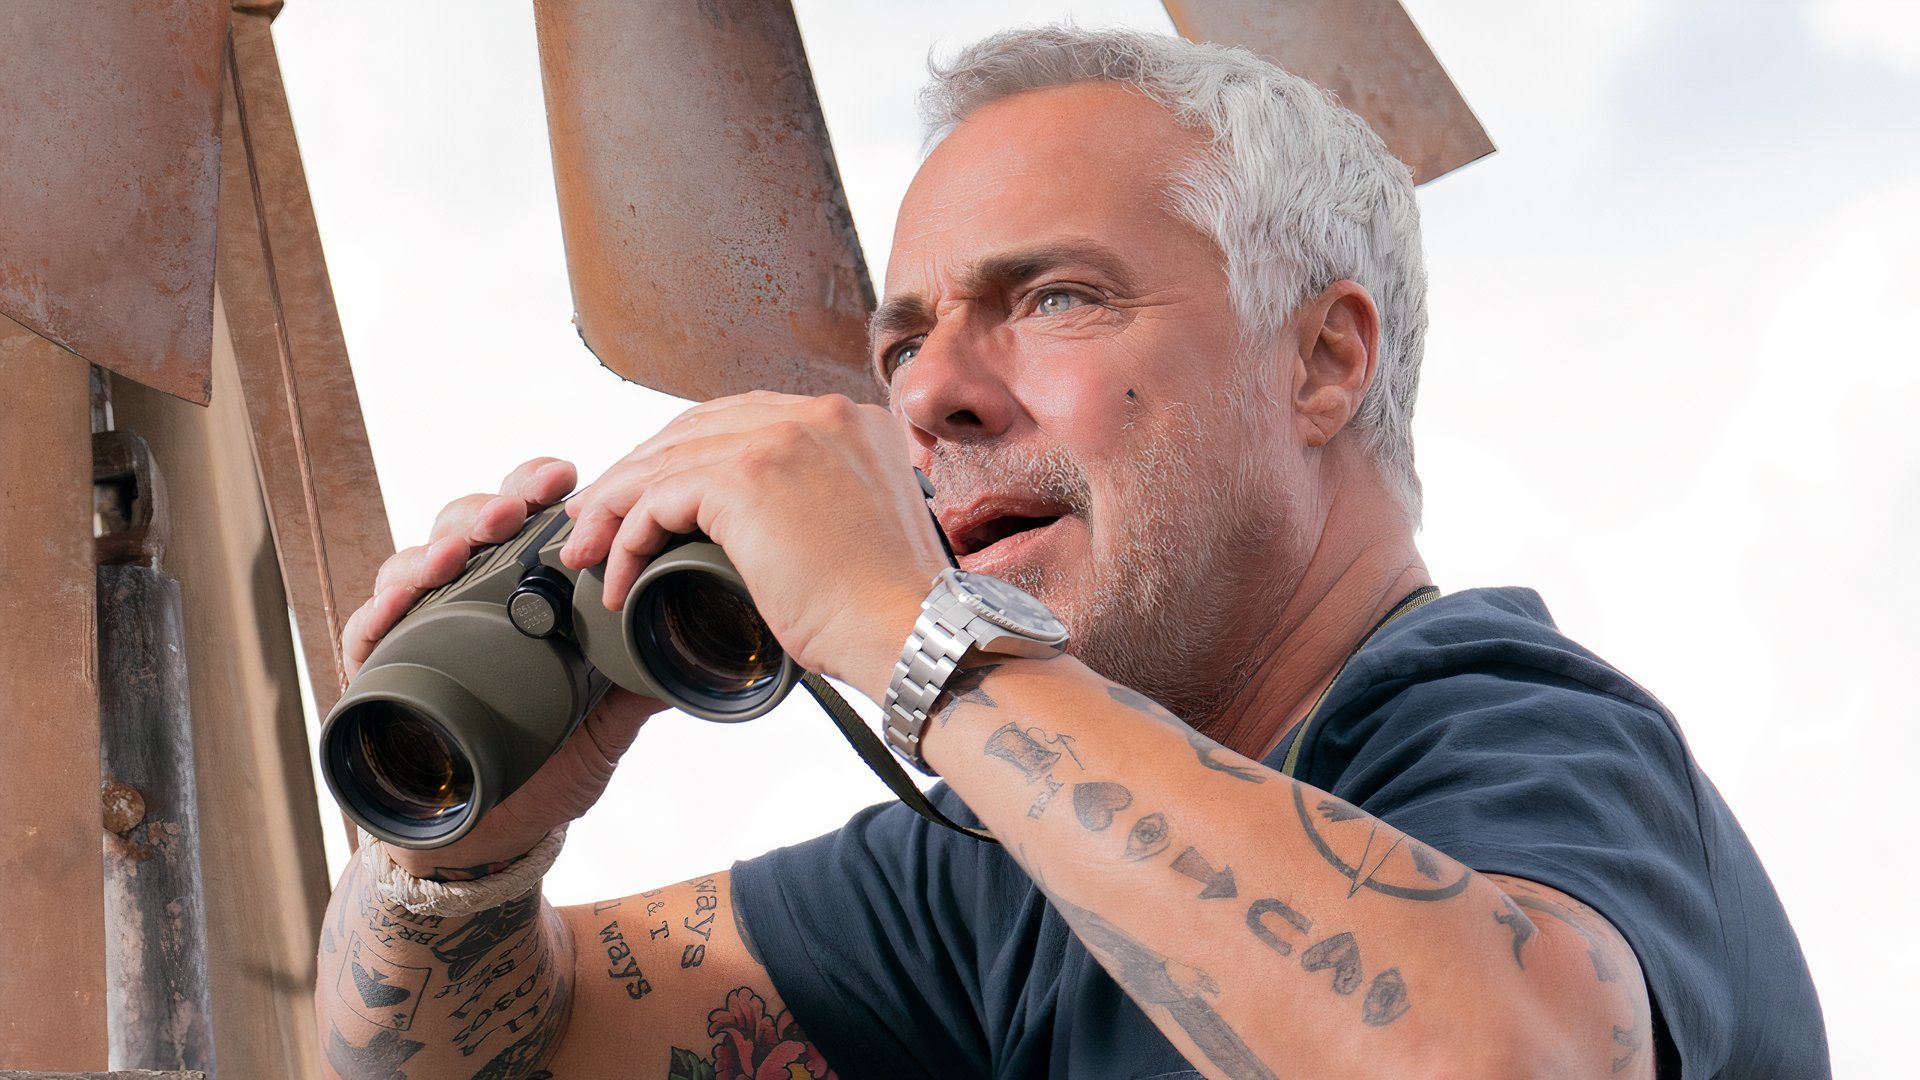 Bosch holds binoculars in Bosch: Legacy